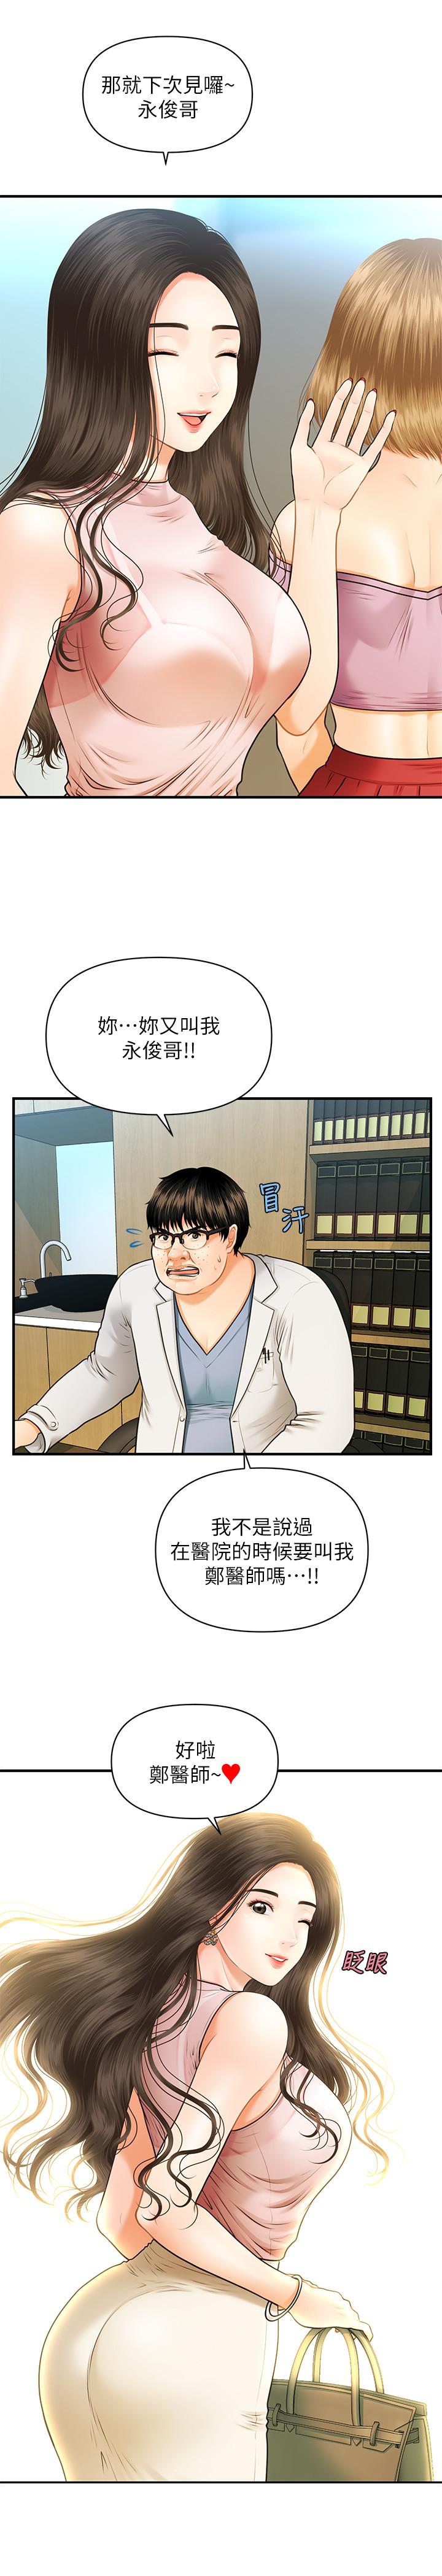 《医美奇鸡》漫画 第1话-技术一流的整形医师